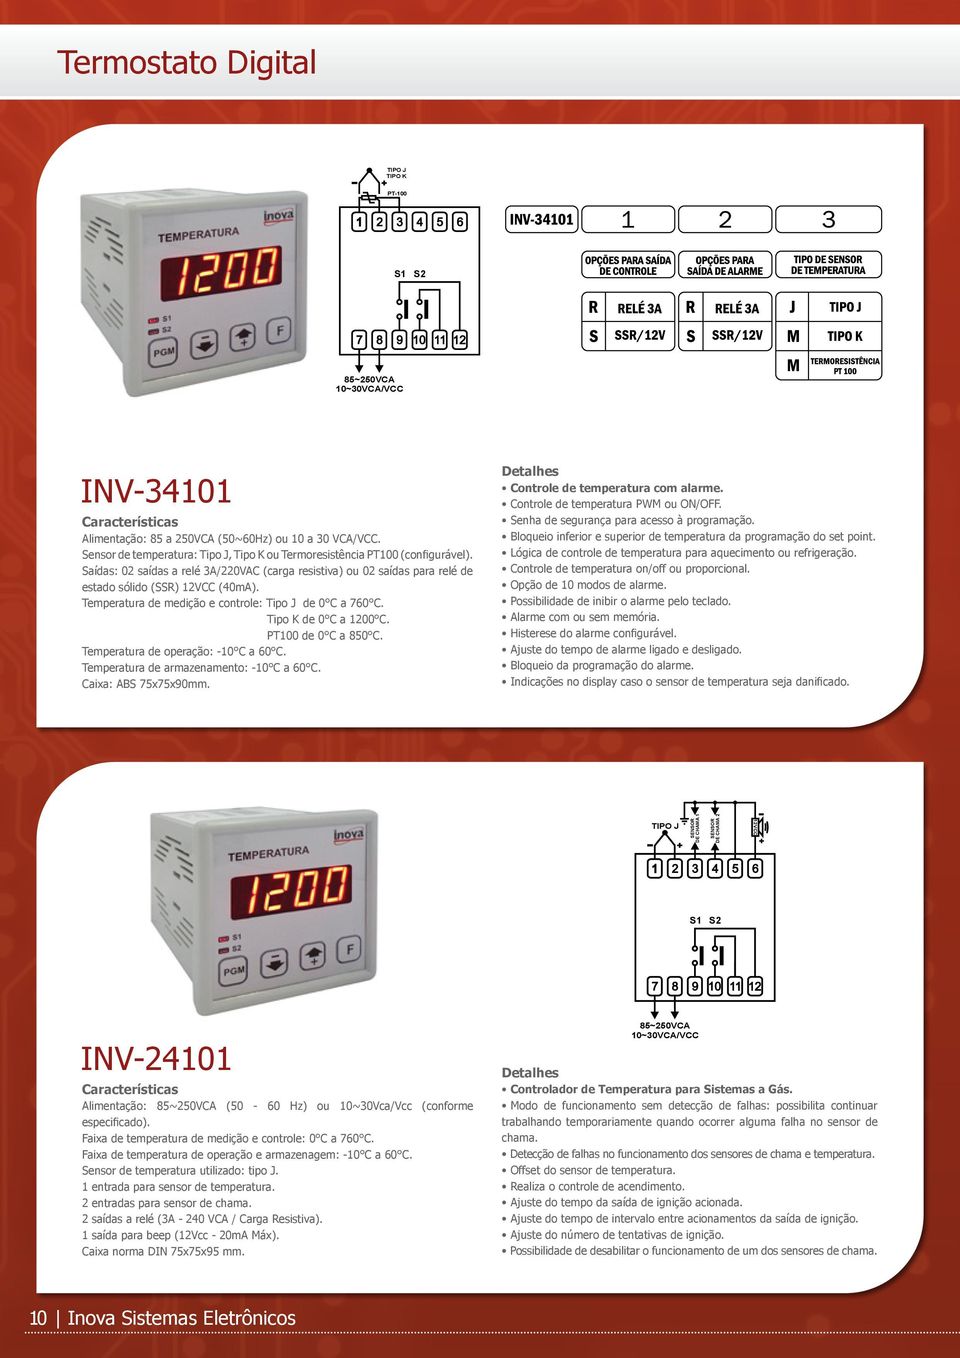 Temperatura de medição e controle: Tipo J de 0 C a 760 C. Tipo K de 0 C a 1200 C. PT100 de 0 C a 850 C. Caixa: ABS 75x75x90mm. Controle de temperatura com alarme.